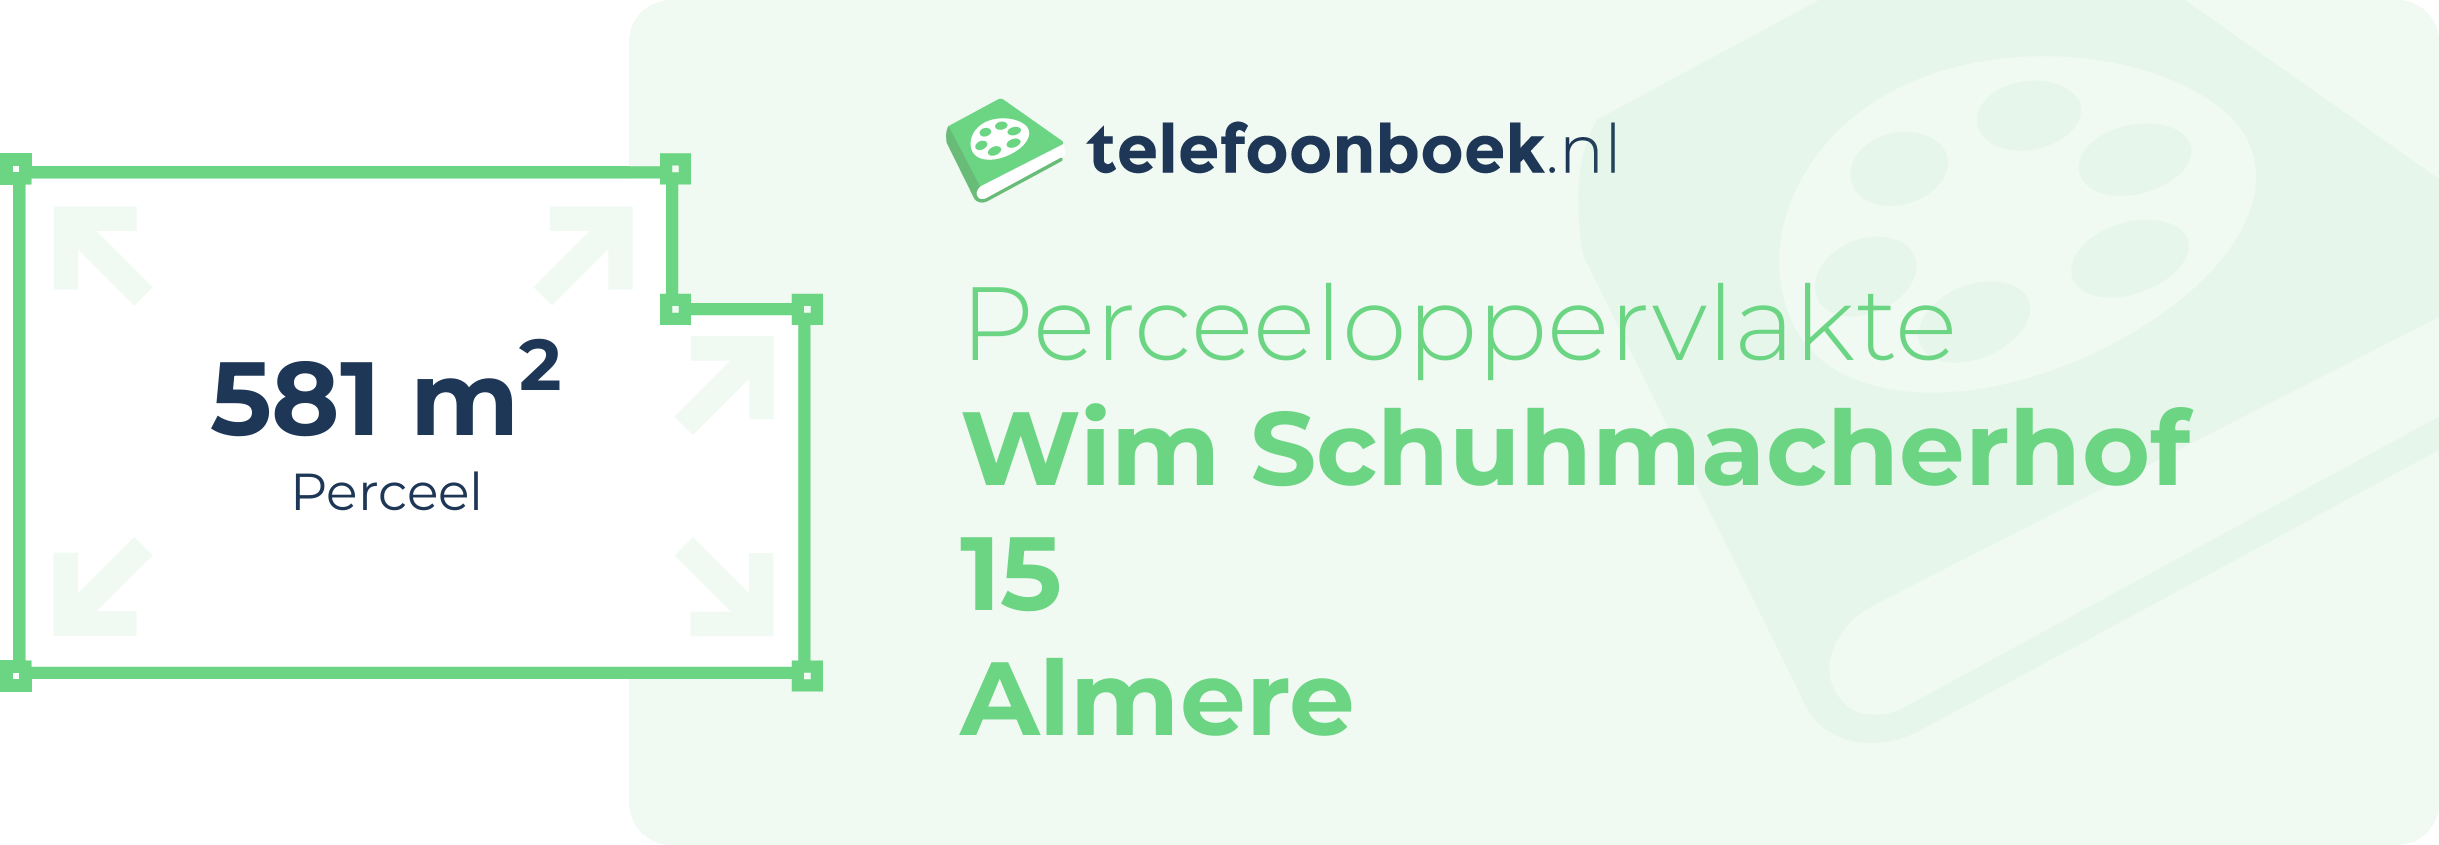 Perceeloppervlakte Wim Schuhmacherhof 15 Almere